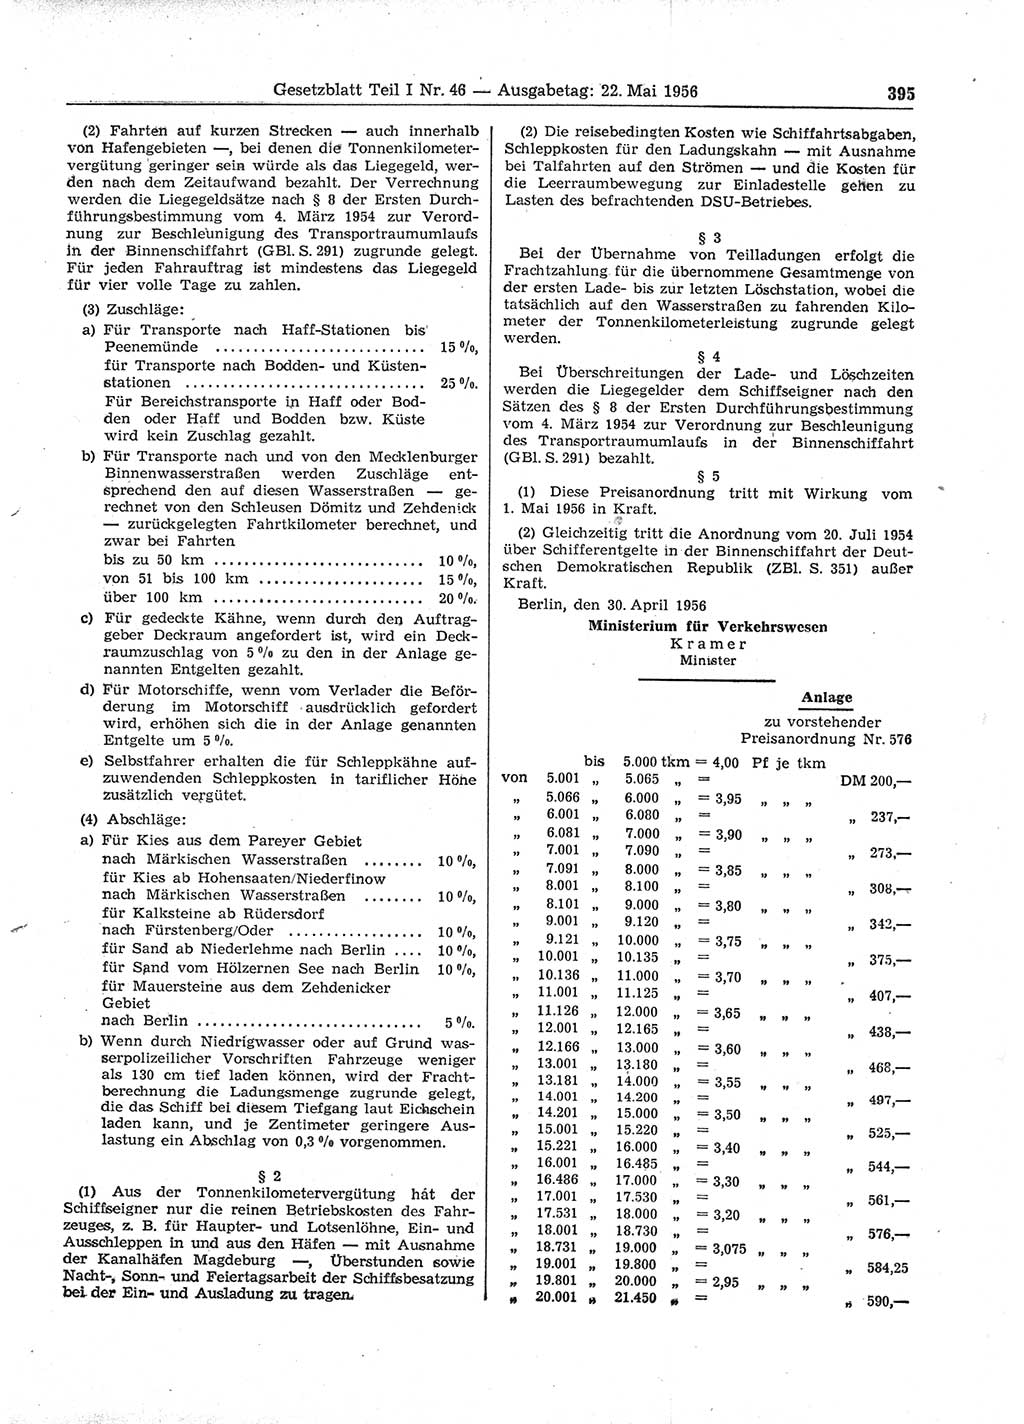 Gesetzblatt (GBl.) der Deutschen Demokratischen Republik (DDR) Teil Ⅰ 1956, Seite 395 (GBl. DDR Ⅰ 1956, S. 395)